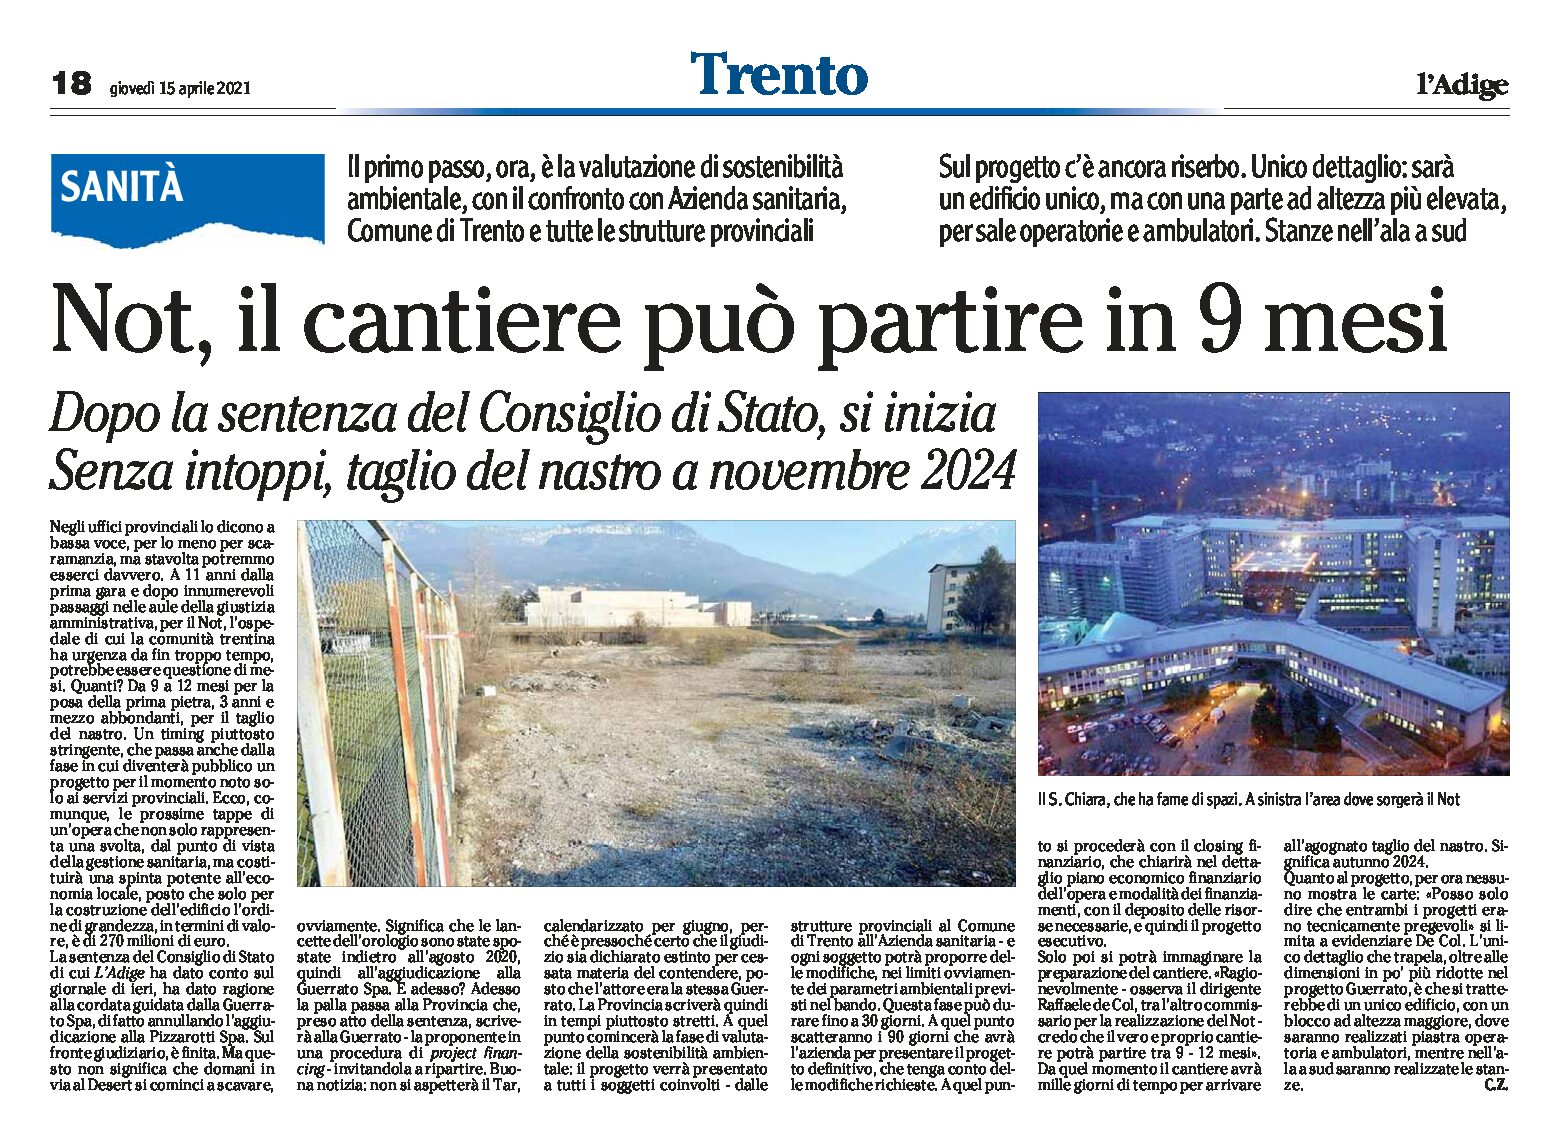 Trento, Not: il cantiere può partire in 9 mesi. Senza intoppi, taglio del nastro a novembre 2024